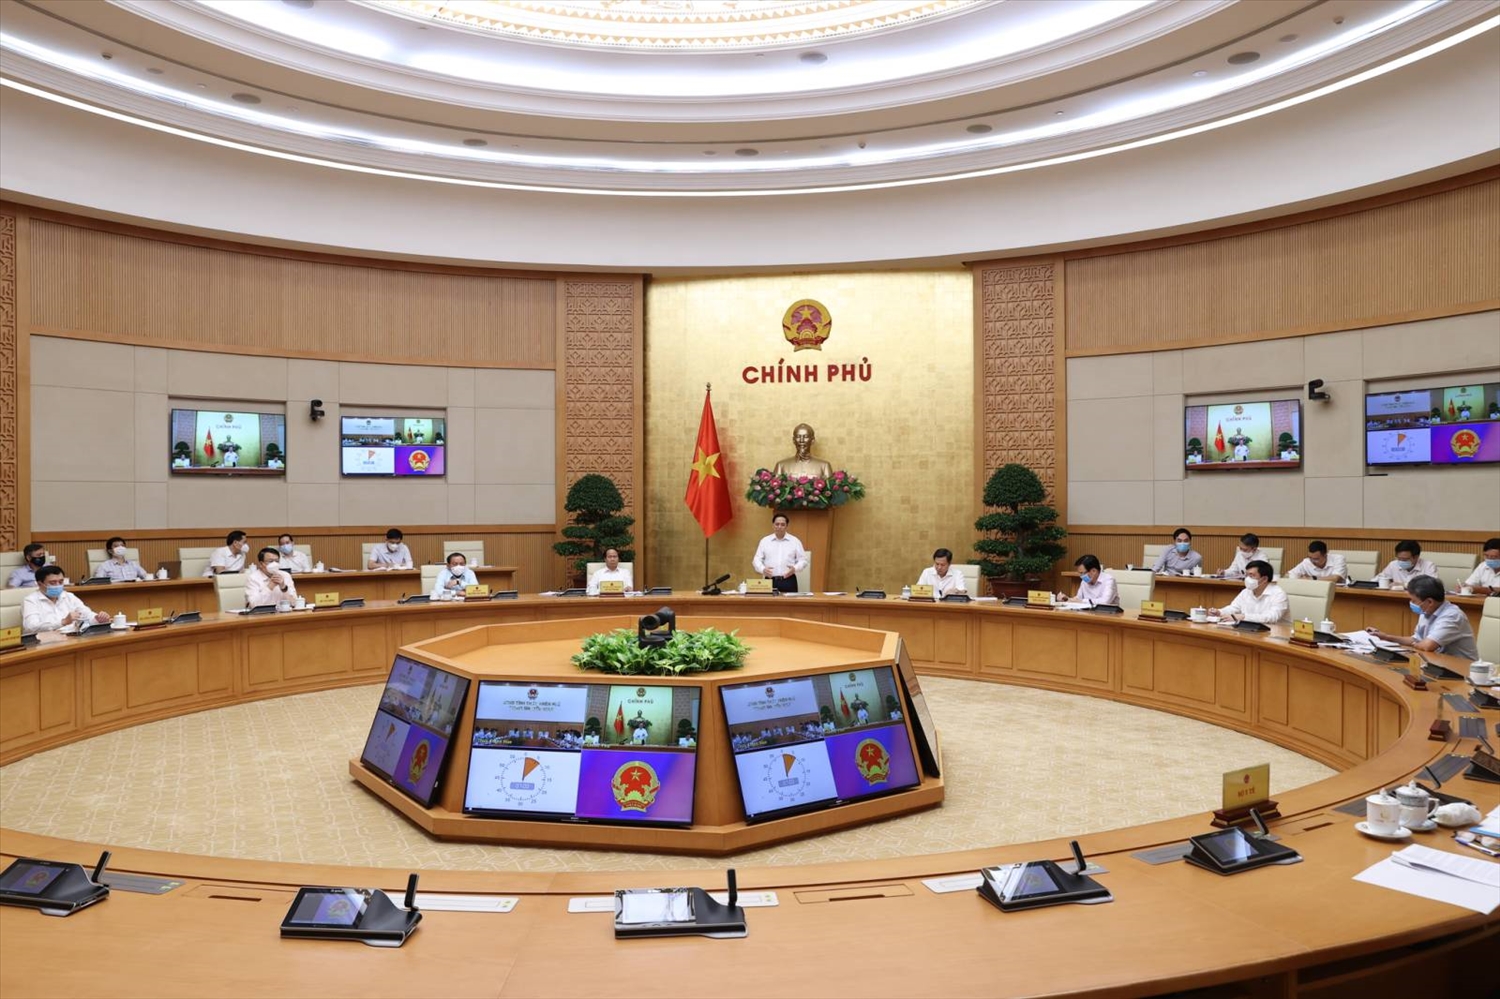 Thủ tướng đề nghị Thừa Thiên Huế luôn bám sát và thực hiện hiệu quả Nghị quyết 54 của Bộ Chính trị, góp phần giải quyết những điểm nghẽn, khó khăn, vướng mắc, mục tiêu đến năm 2025, trở thành thành phố trực thuộc Trung ương. Ảnh: VGP/Nhật Bắc